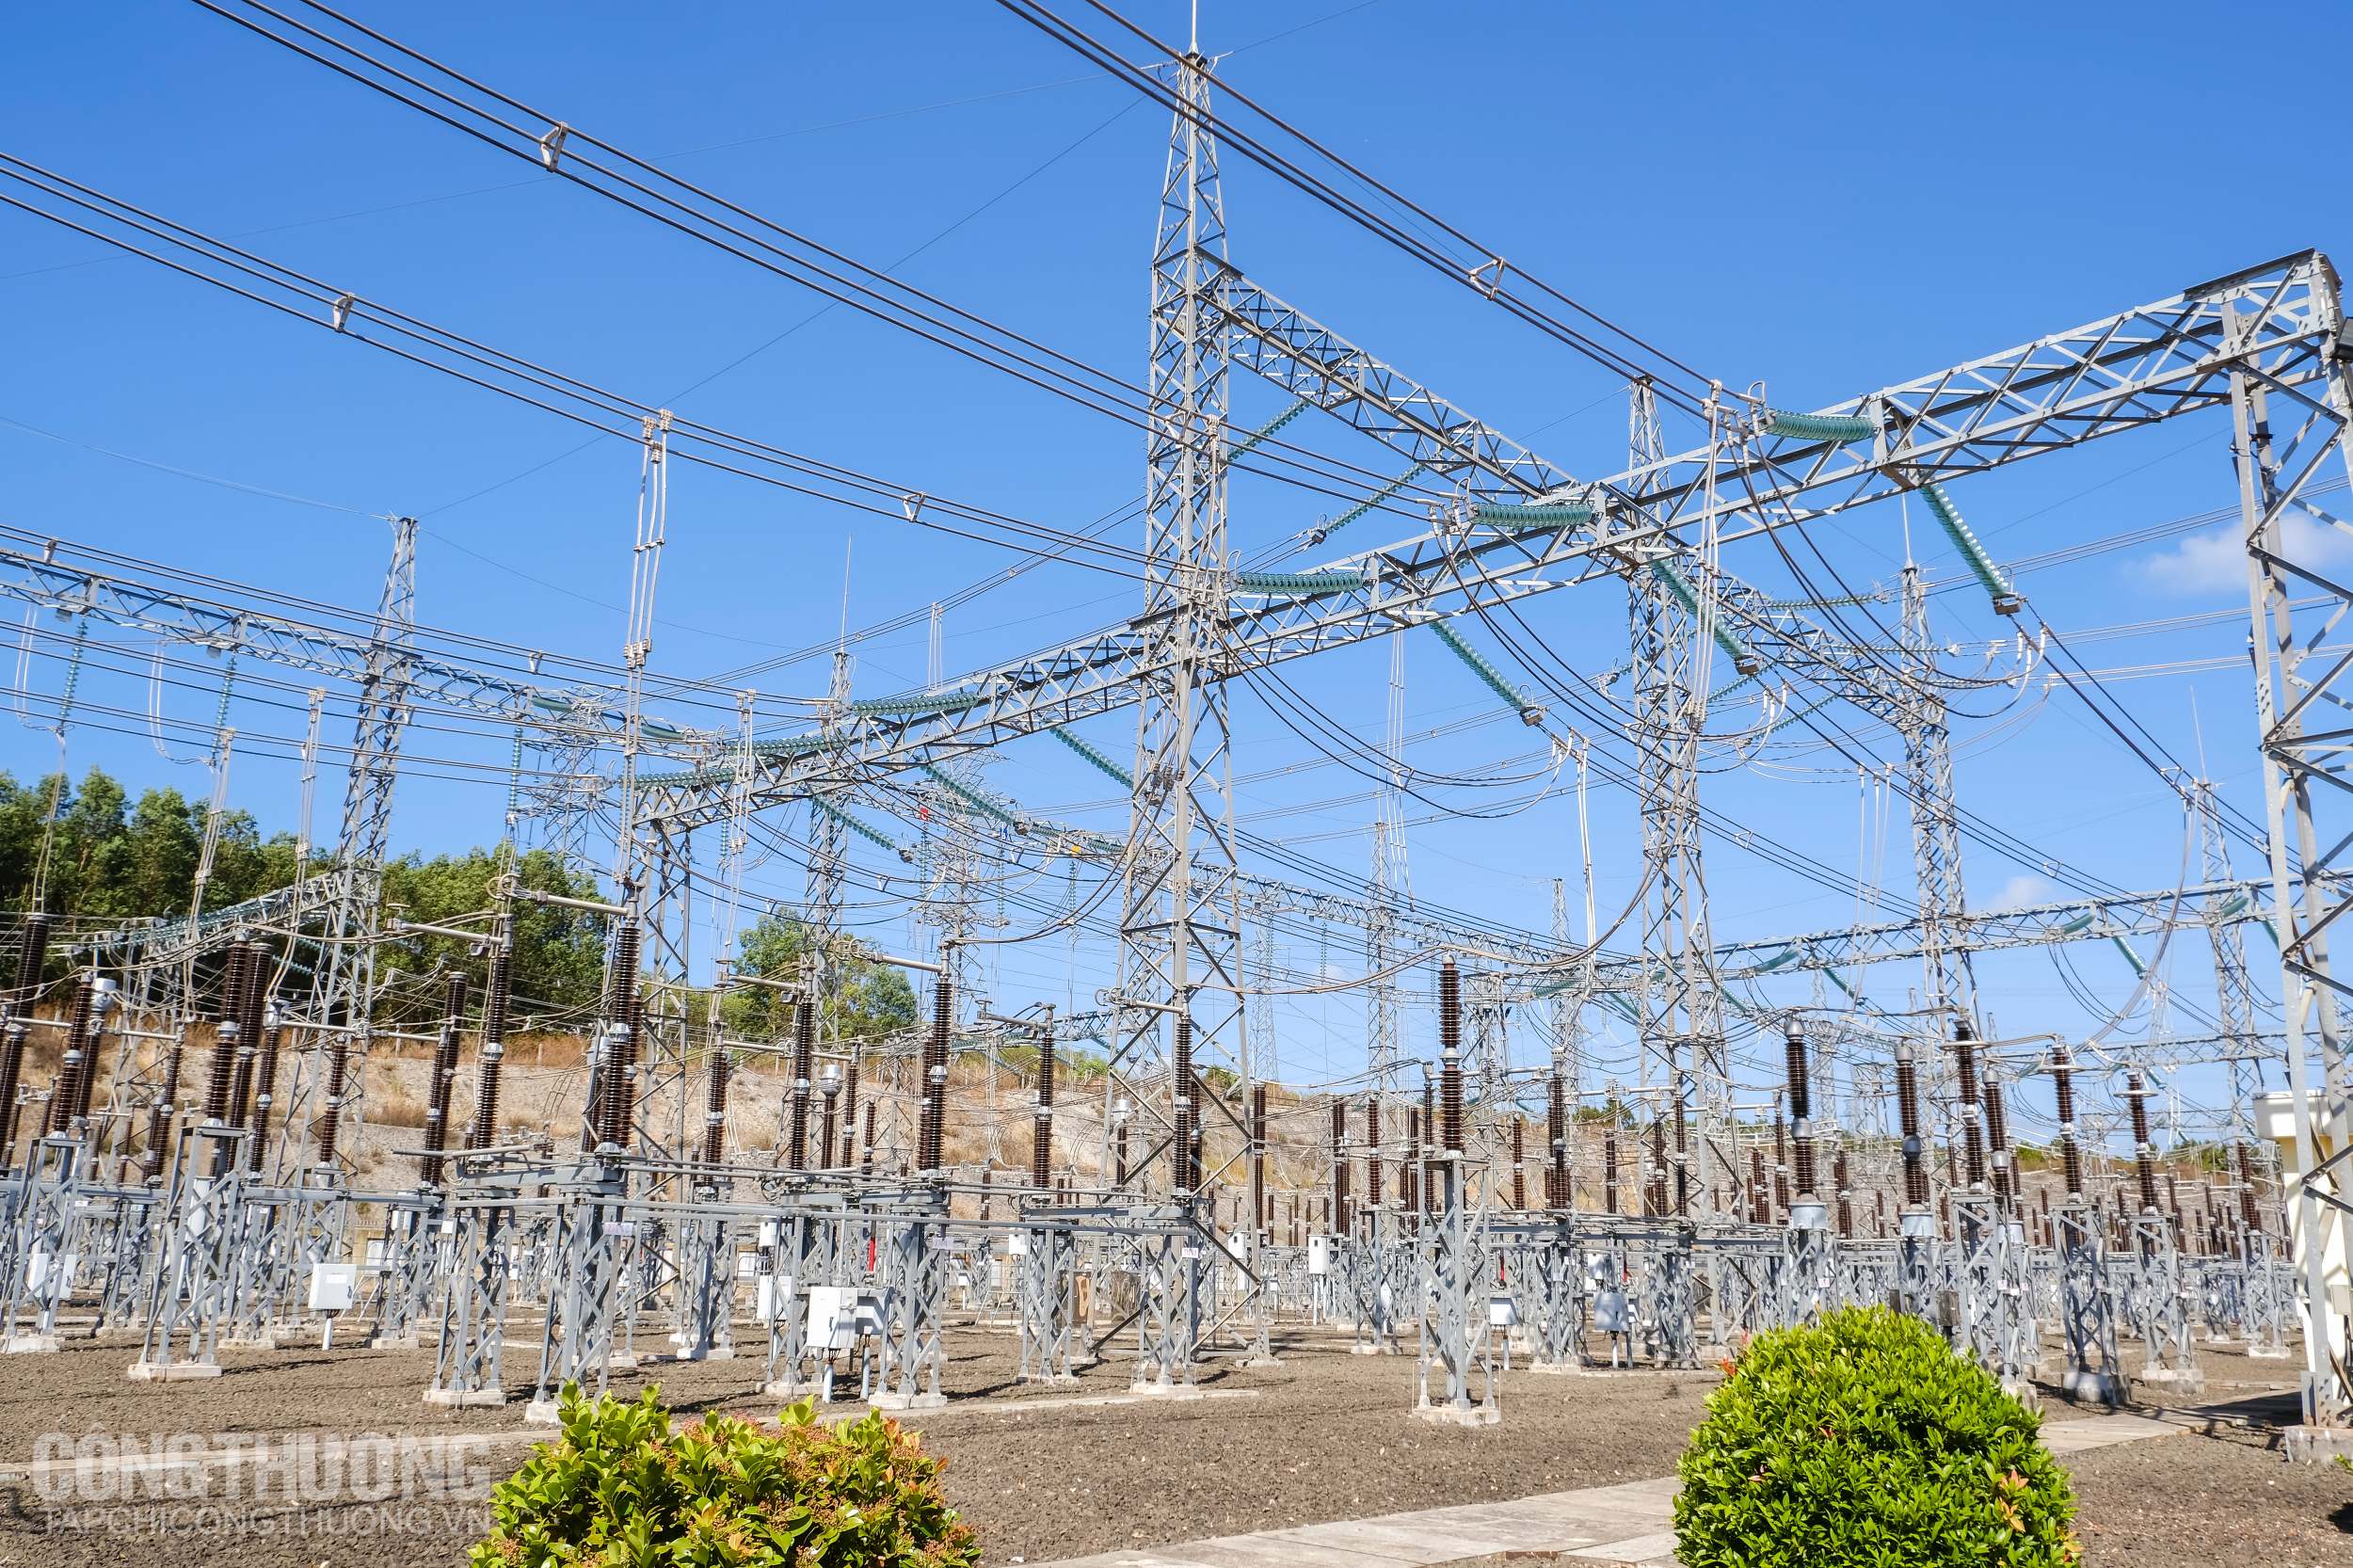 Hạ tầng nguồn điện và lưới điện đã có sự phát triển mạnh mẽ trong thời gian qua